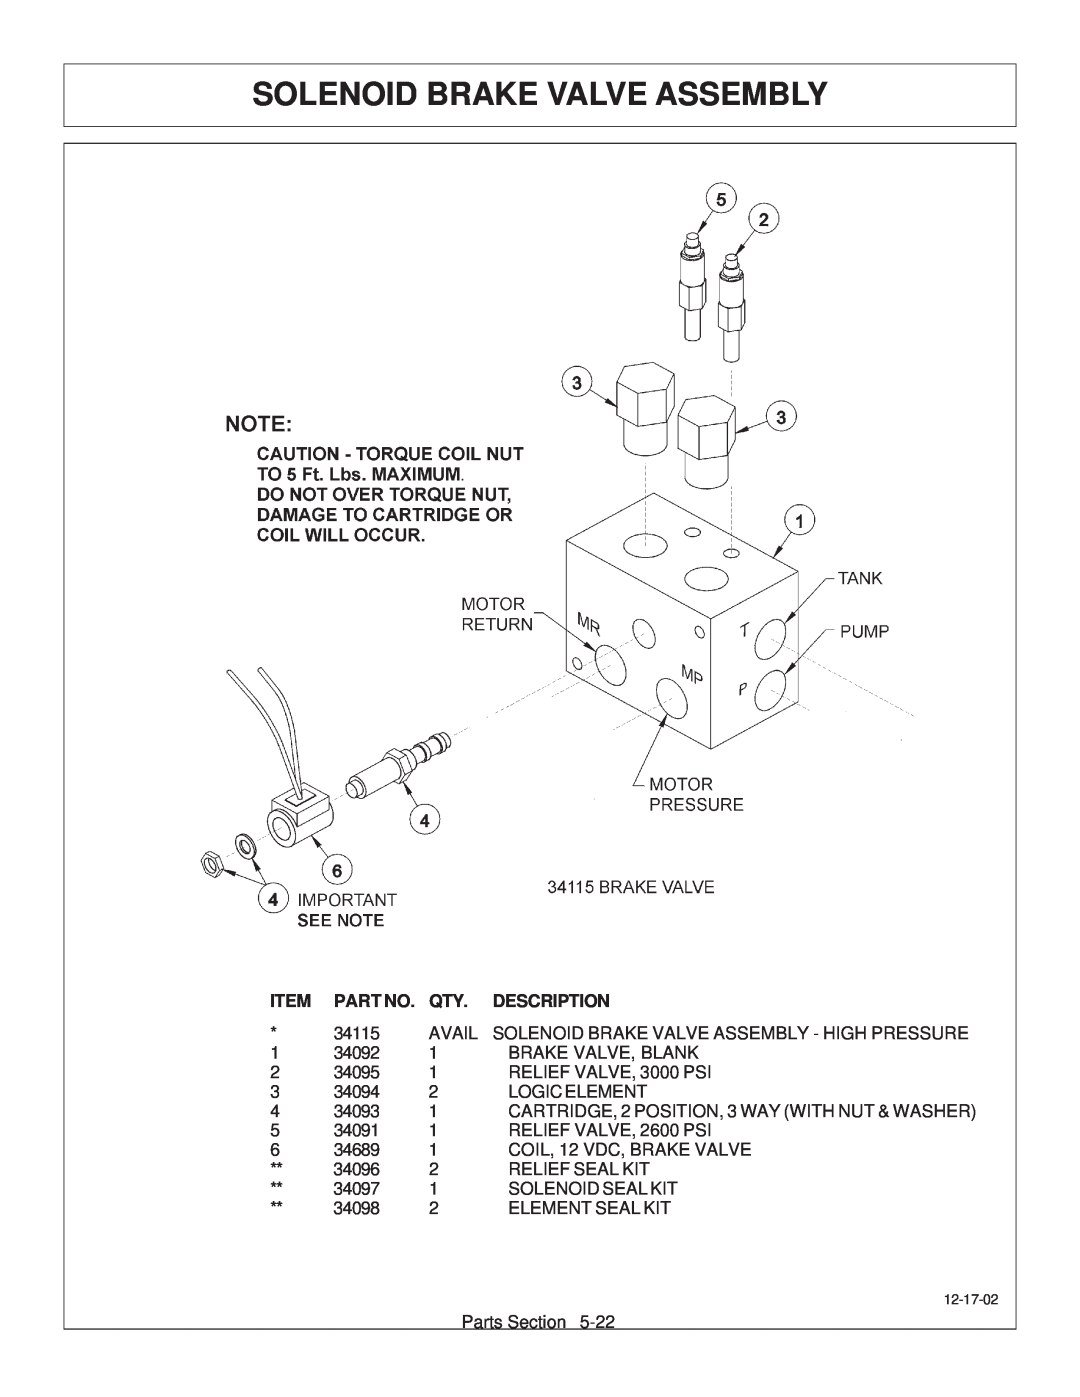 Tiger Products Co., Ltd JD 72-7520 manual Solenoid Brake Valve Assembly, Description 